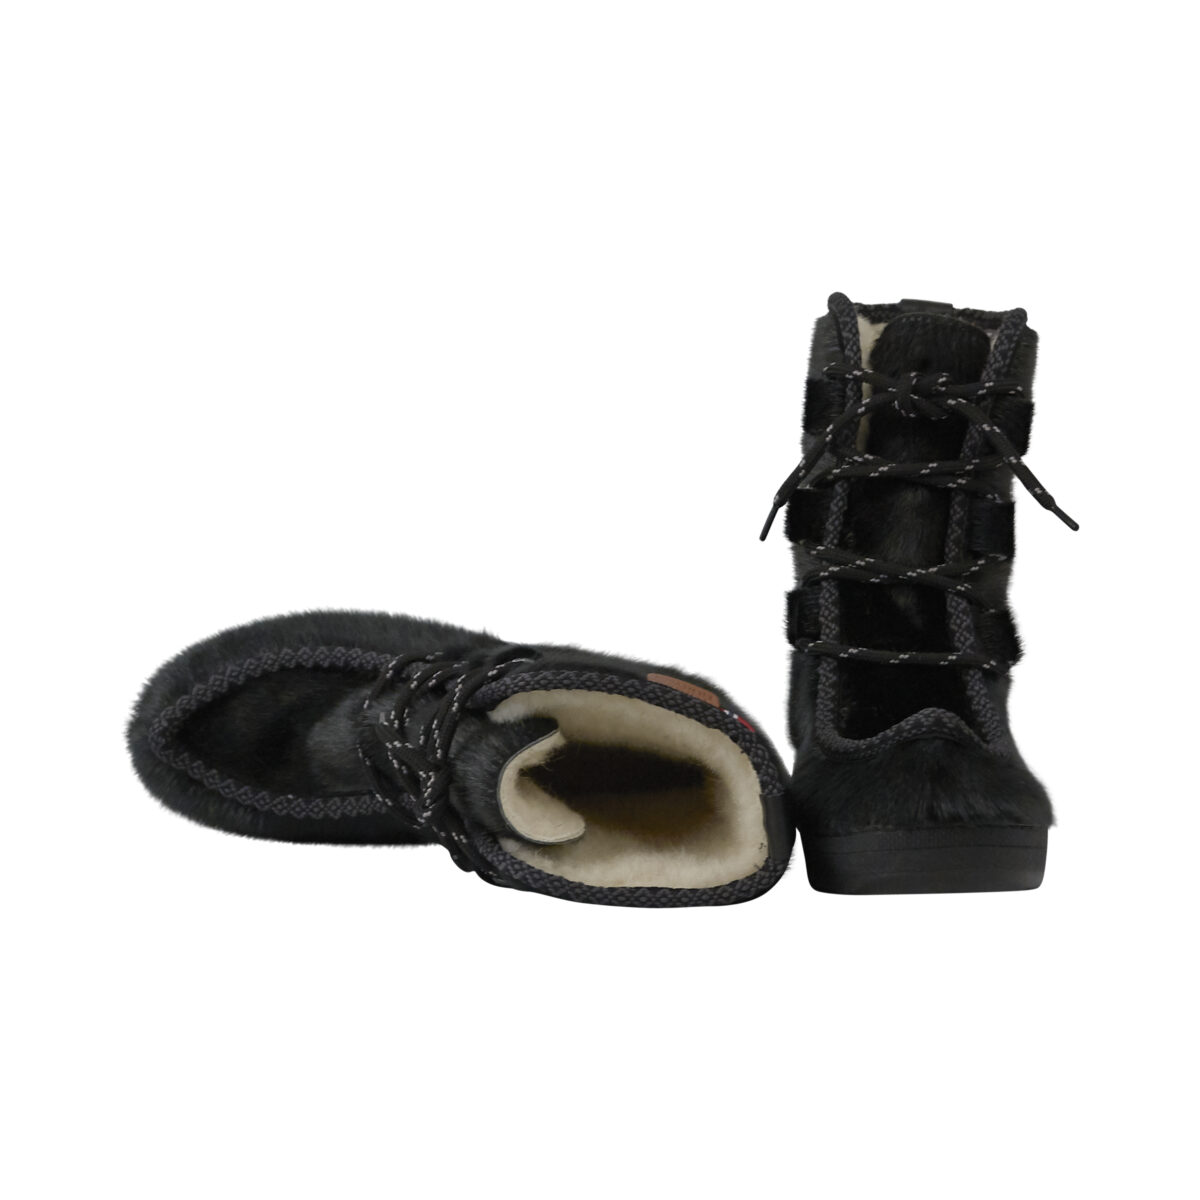 Slumkvarter Atticus Hane Varme herrestøvler i sort, grønlandsk sælskind med en god sål.